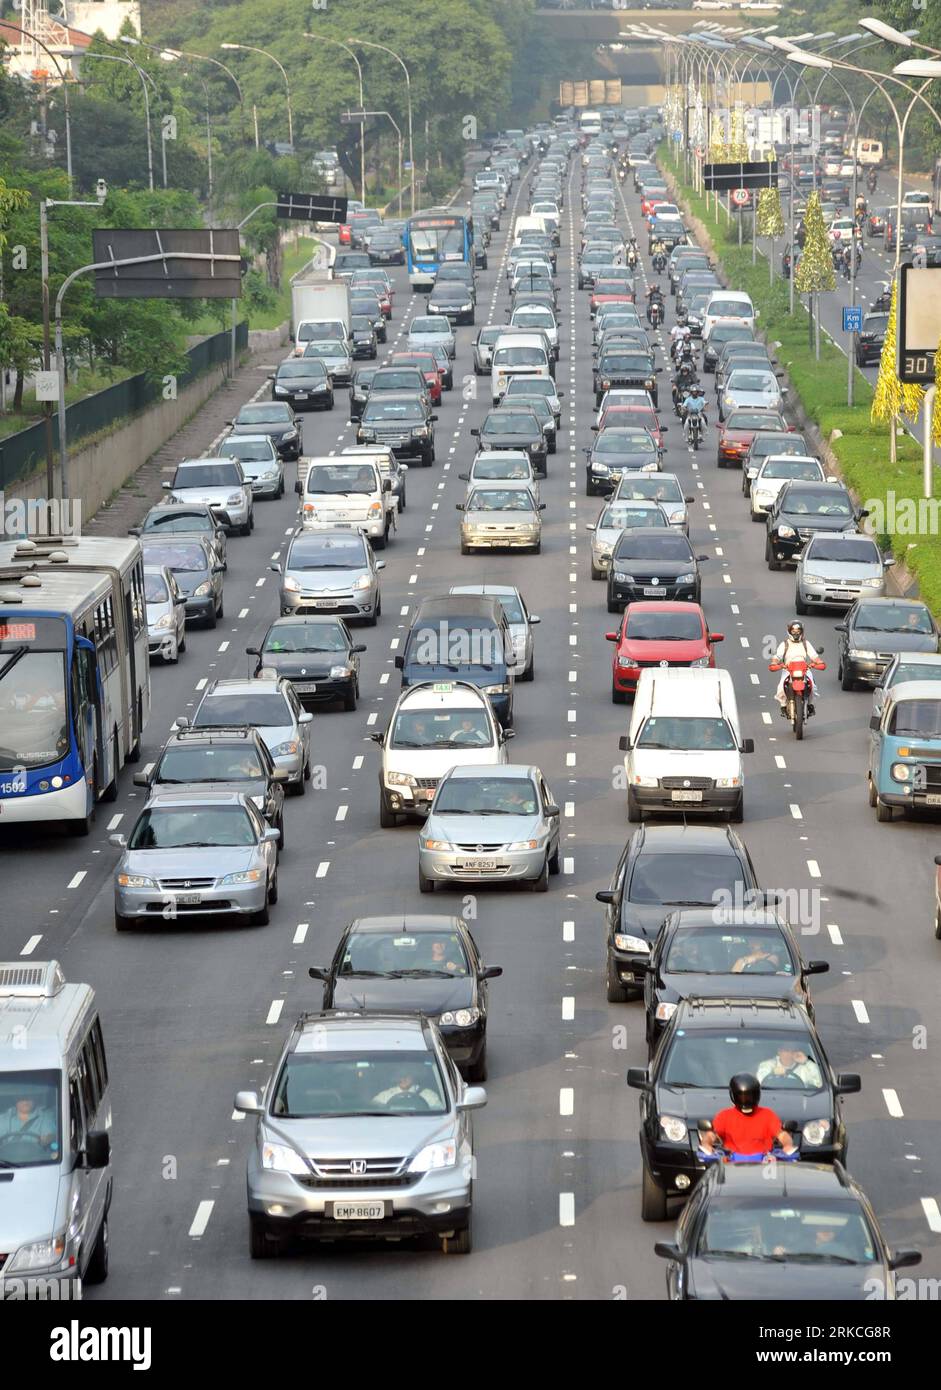 Brief: São Paulo begins widening highway - BNamericas